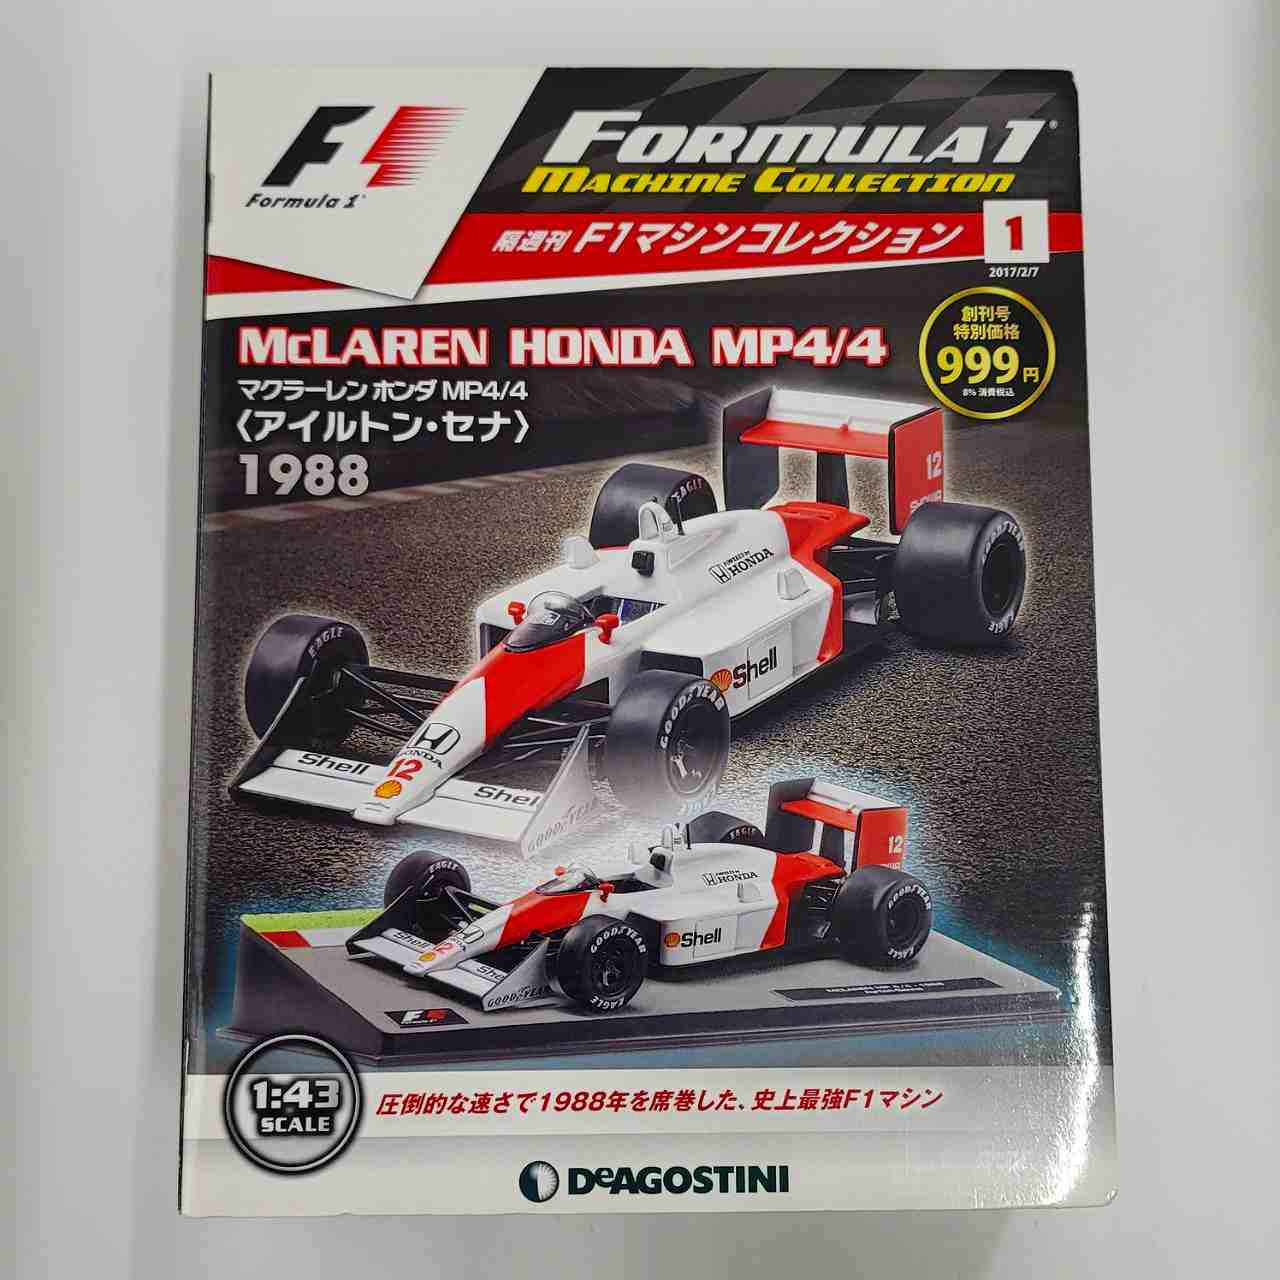 デアゴスティーニ 隔週刊 F1マシンコレクション 1 マクラーレン ホンダ MP4/4 A.セナ 1988